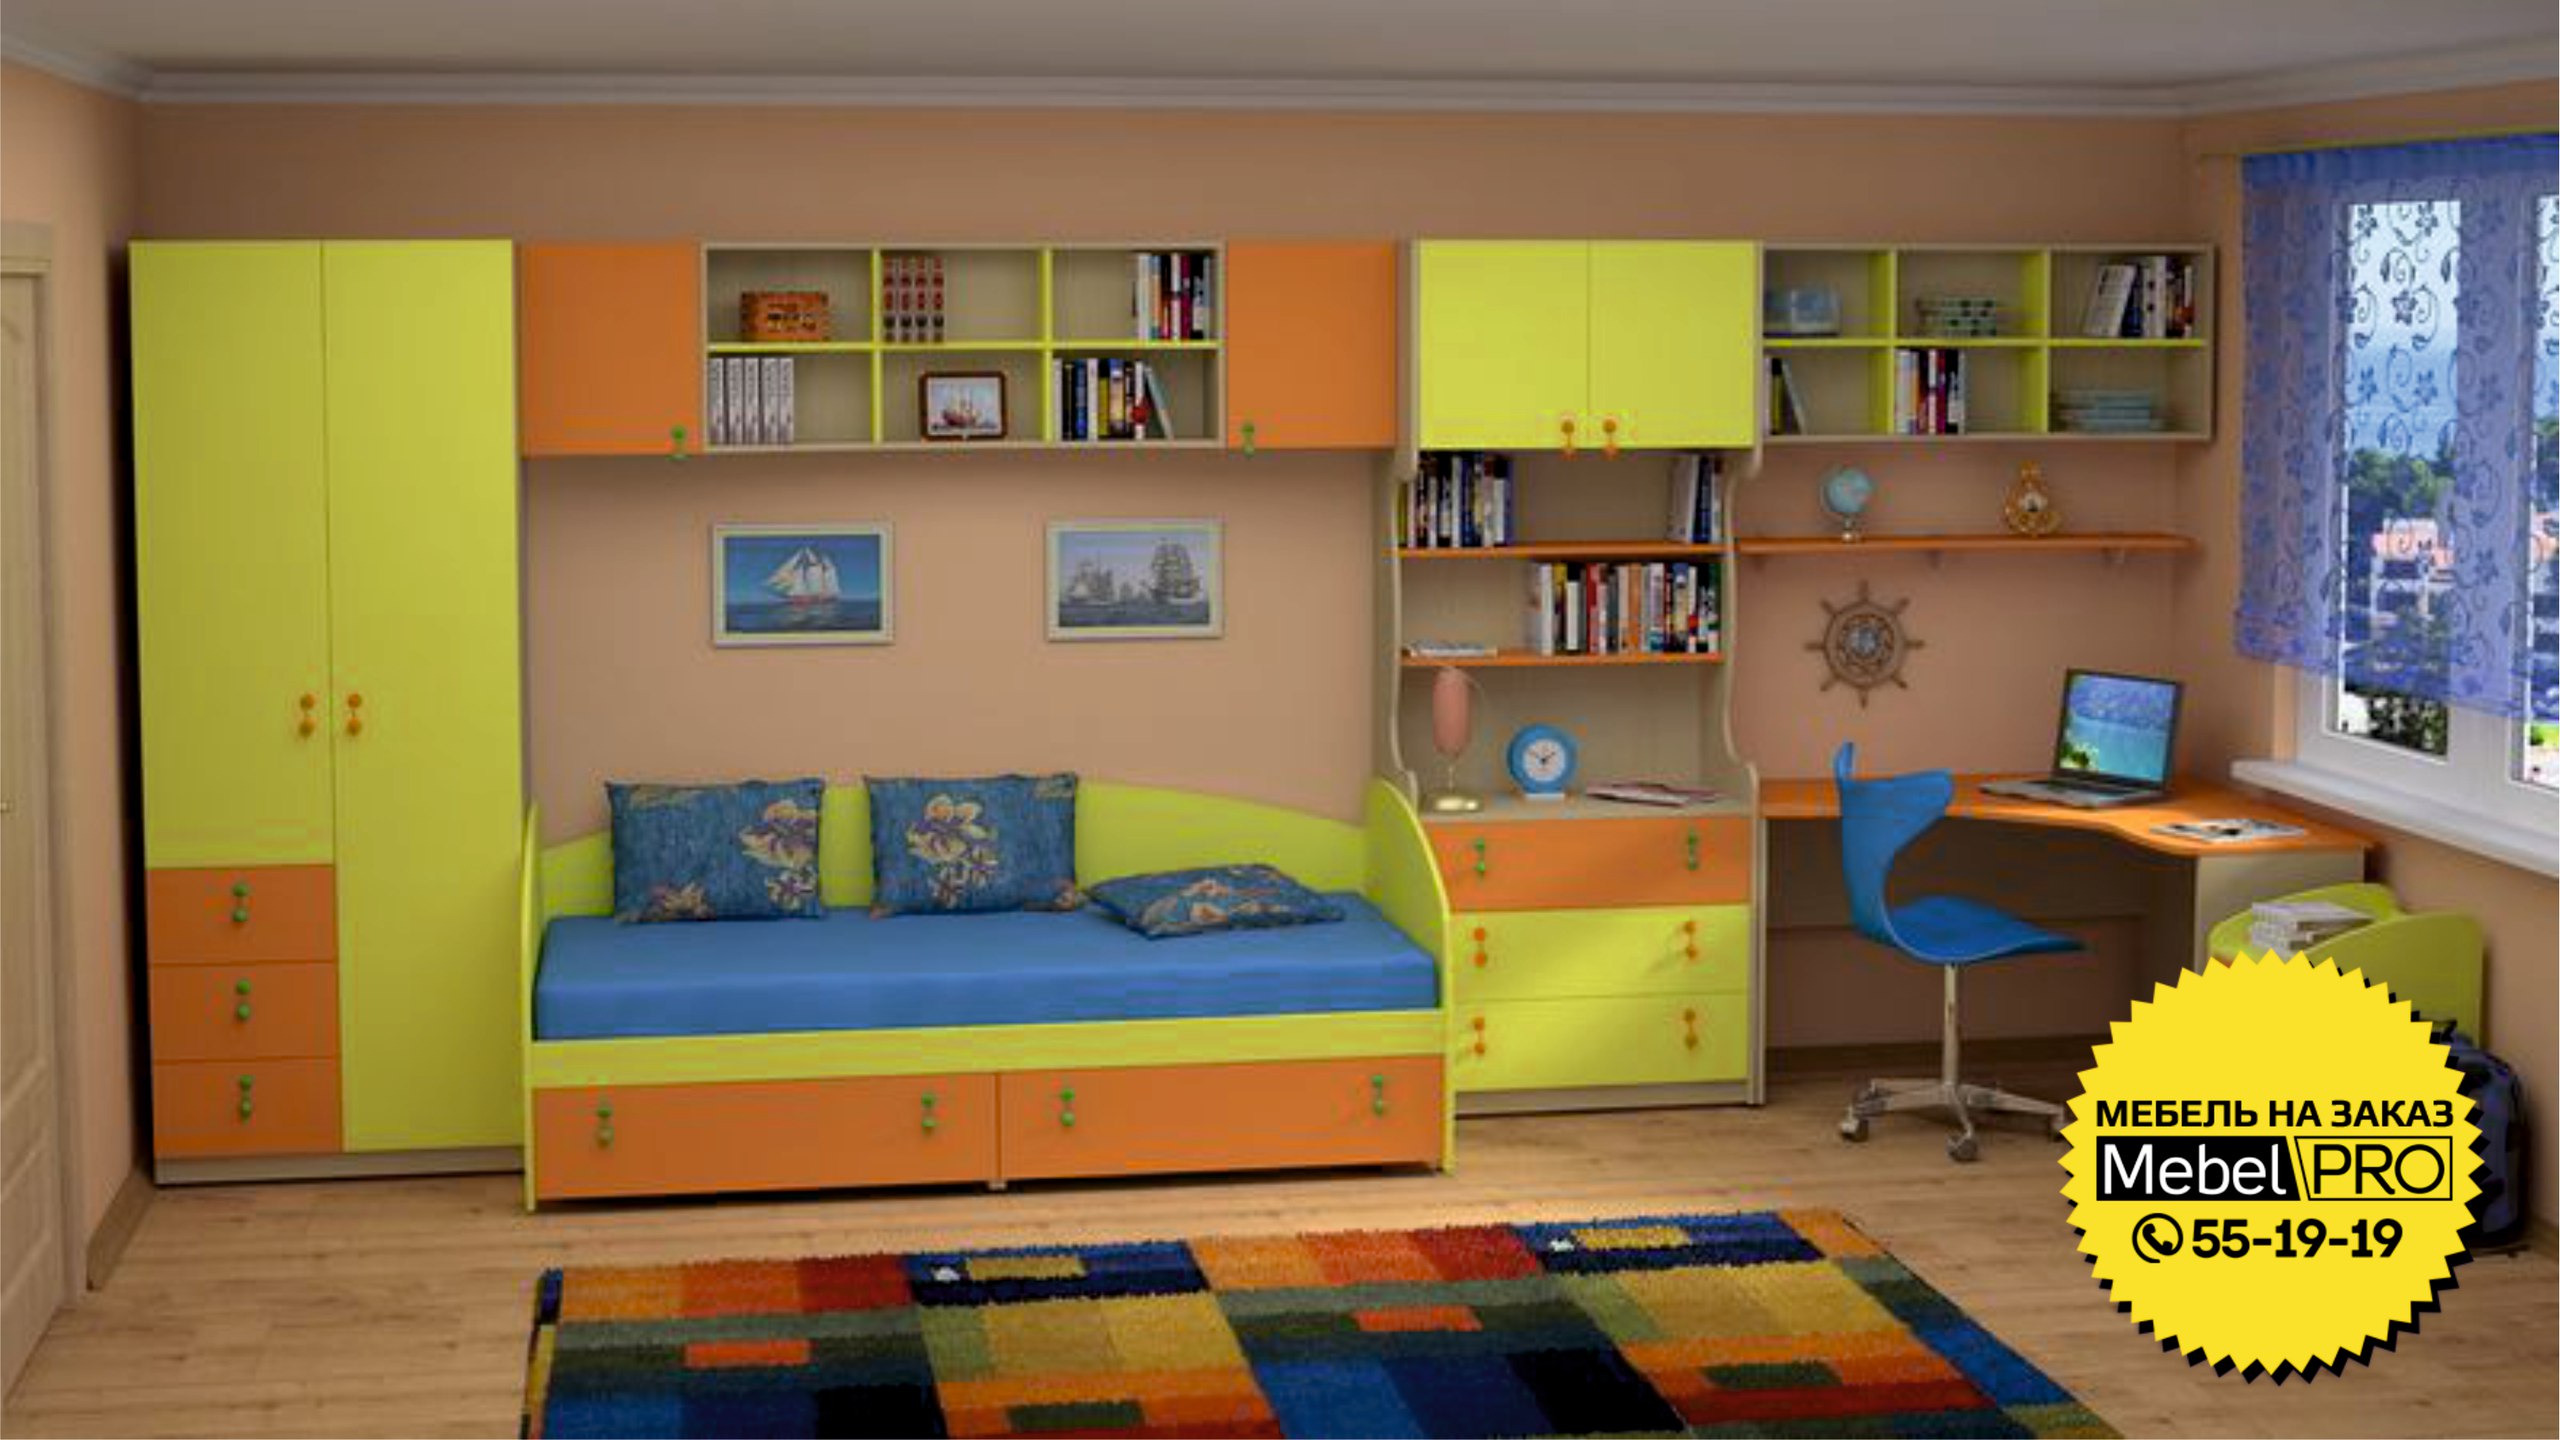 Детская мебель mosmirmebeli gmail com. Мебель в детскую комнату. Мебель для детских комнат. Детские гарнитуры в комнату. Мебель в детскую для мальчика.